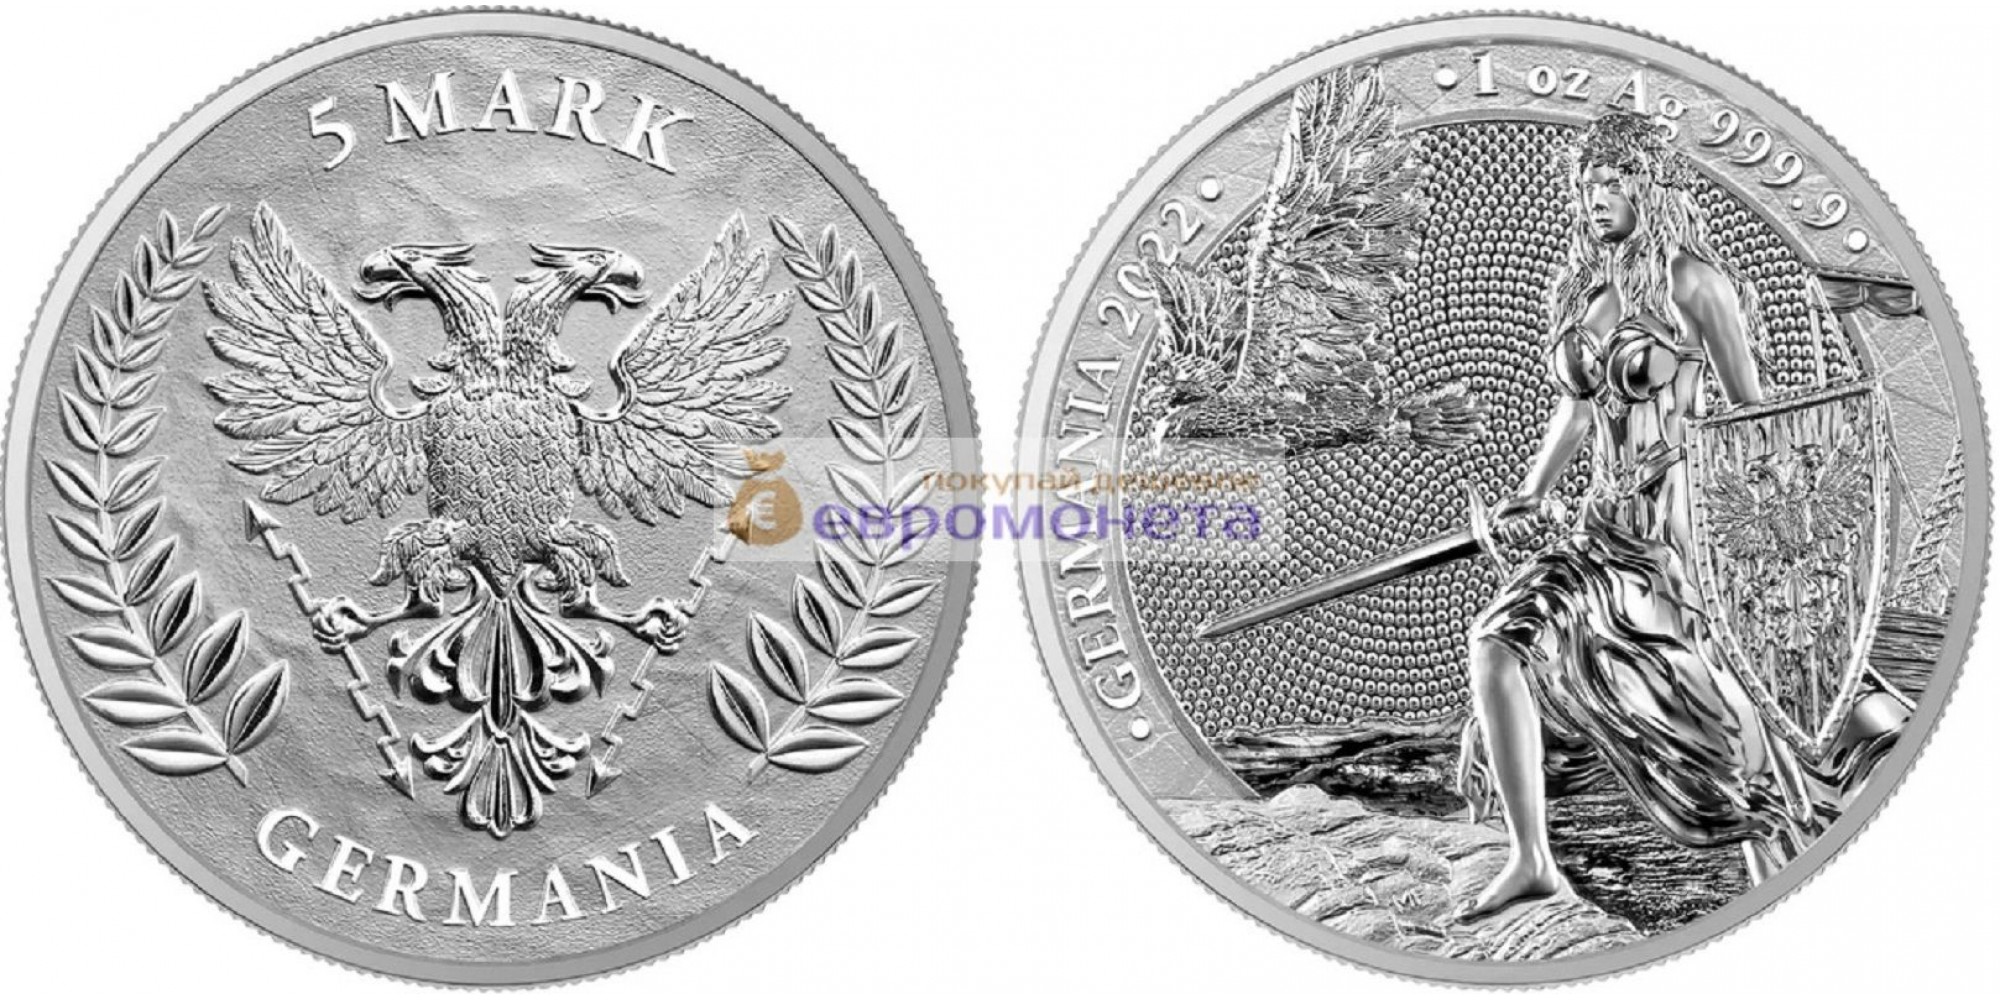 Аллегории: Германия 5 марок 2022 год 1 унция серебра 9999 пробы. Germania Mint тираж 25 000 шт.